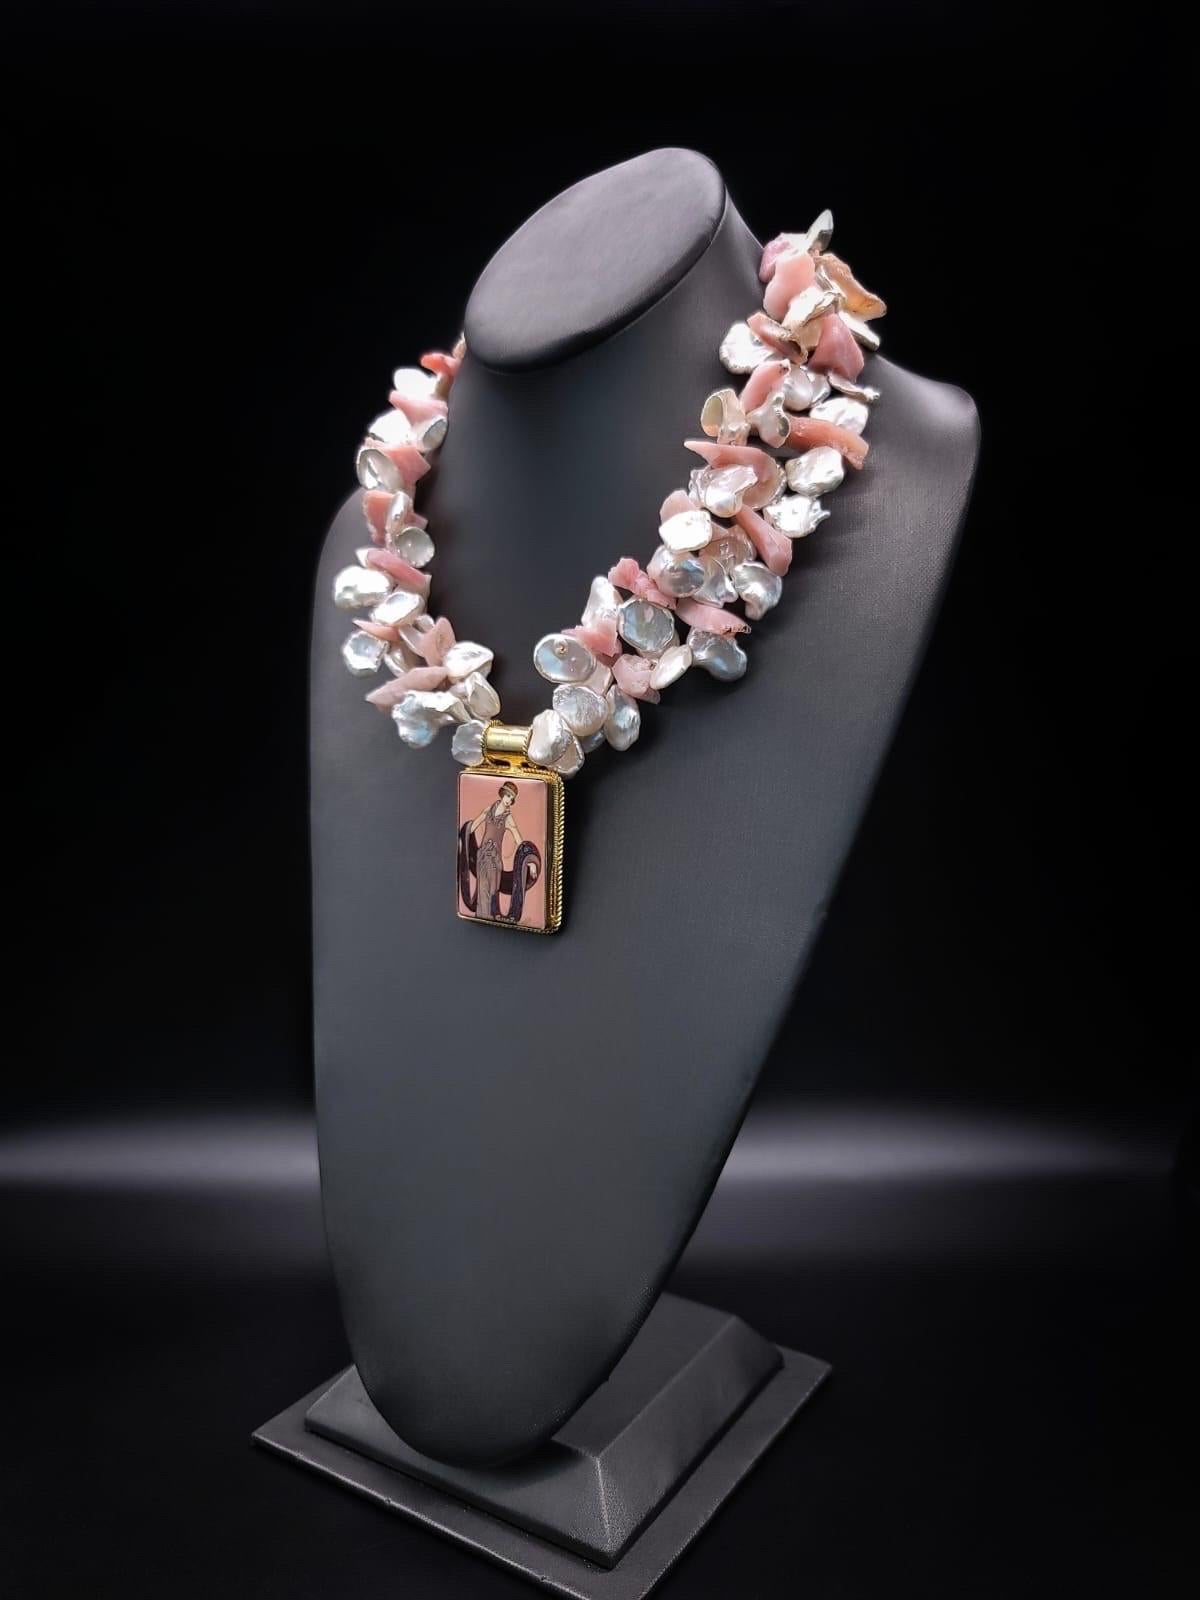 

Wir stellen Ihnen unsere einzigartige Exquisit-Halskette vor, eine harmonische Verbindung von Eleganz und Handwerkskunst. Dieses bemerkenswerte Collier besteht aus zwei Strängen mit strahlenden Keshi-Perlen und rosafarbenen peruanischen Opalen und